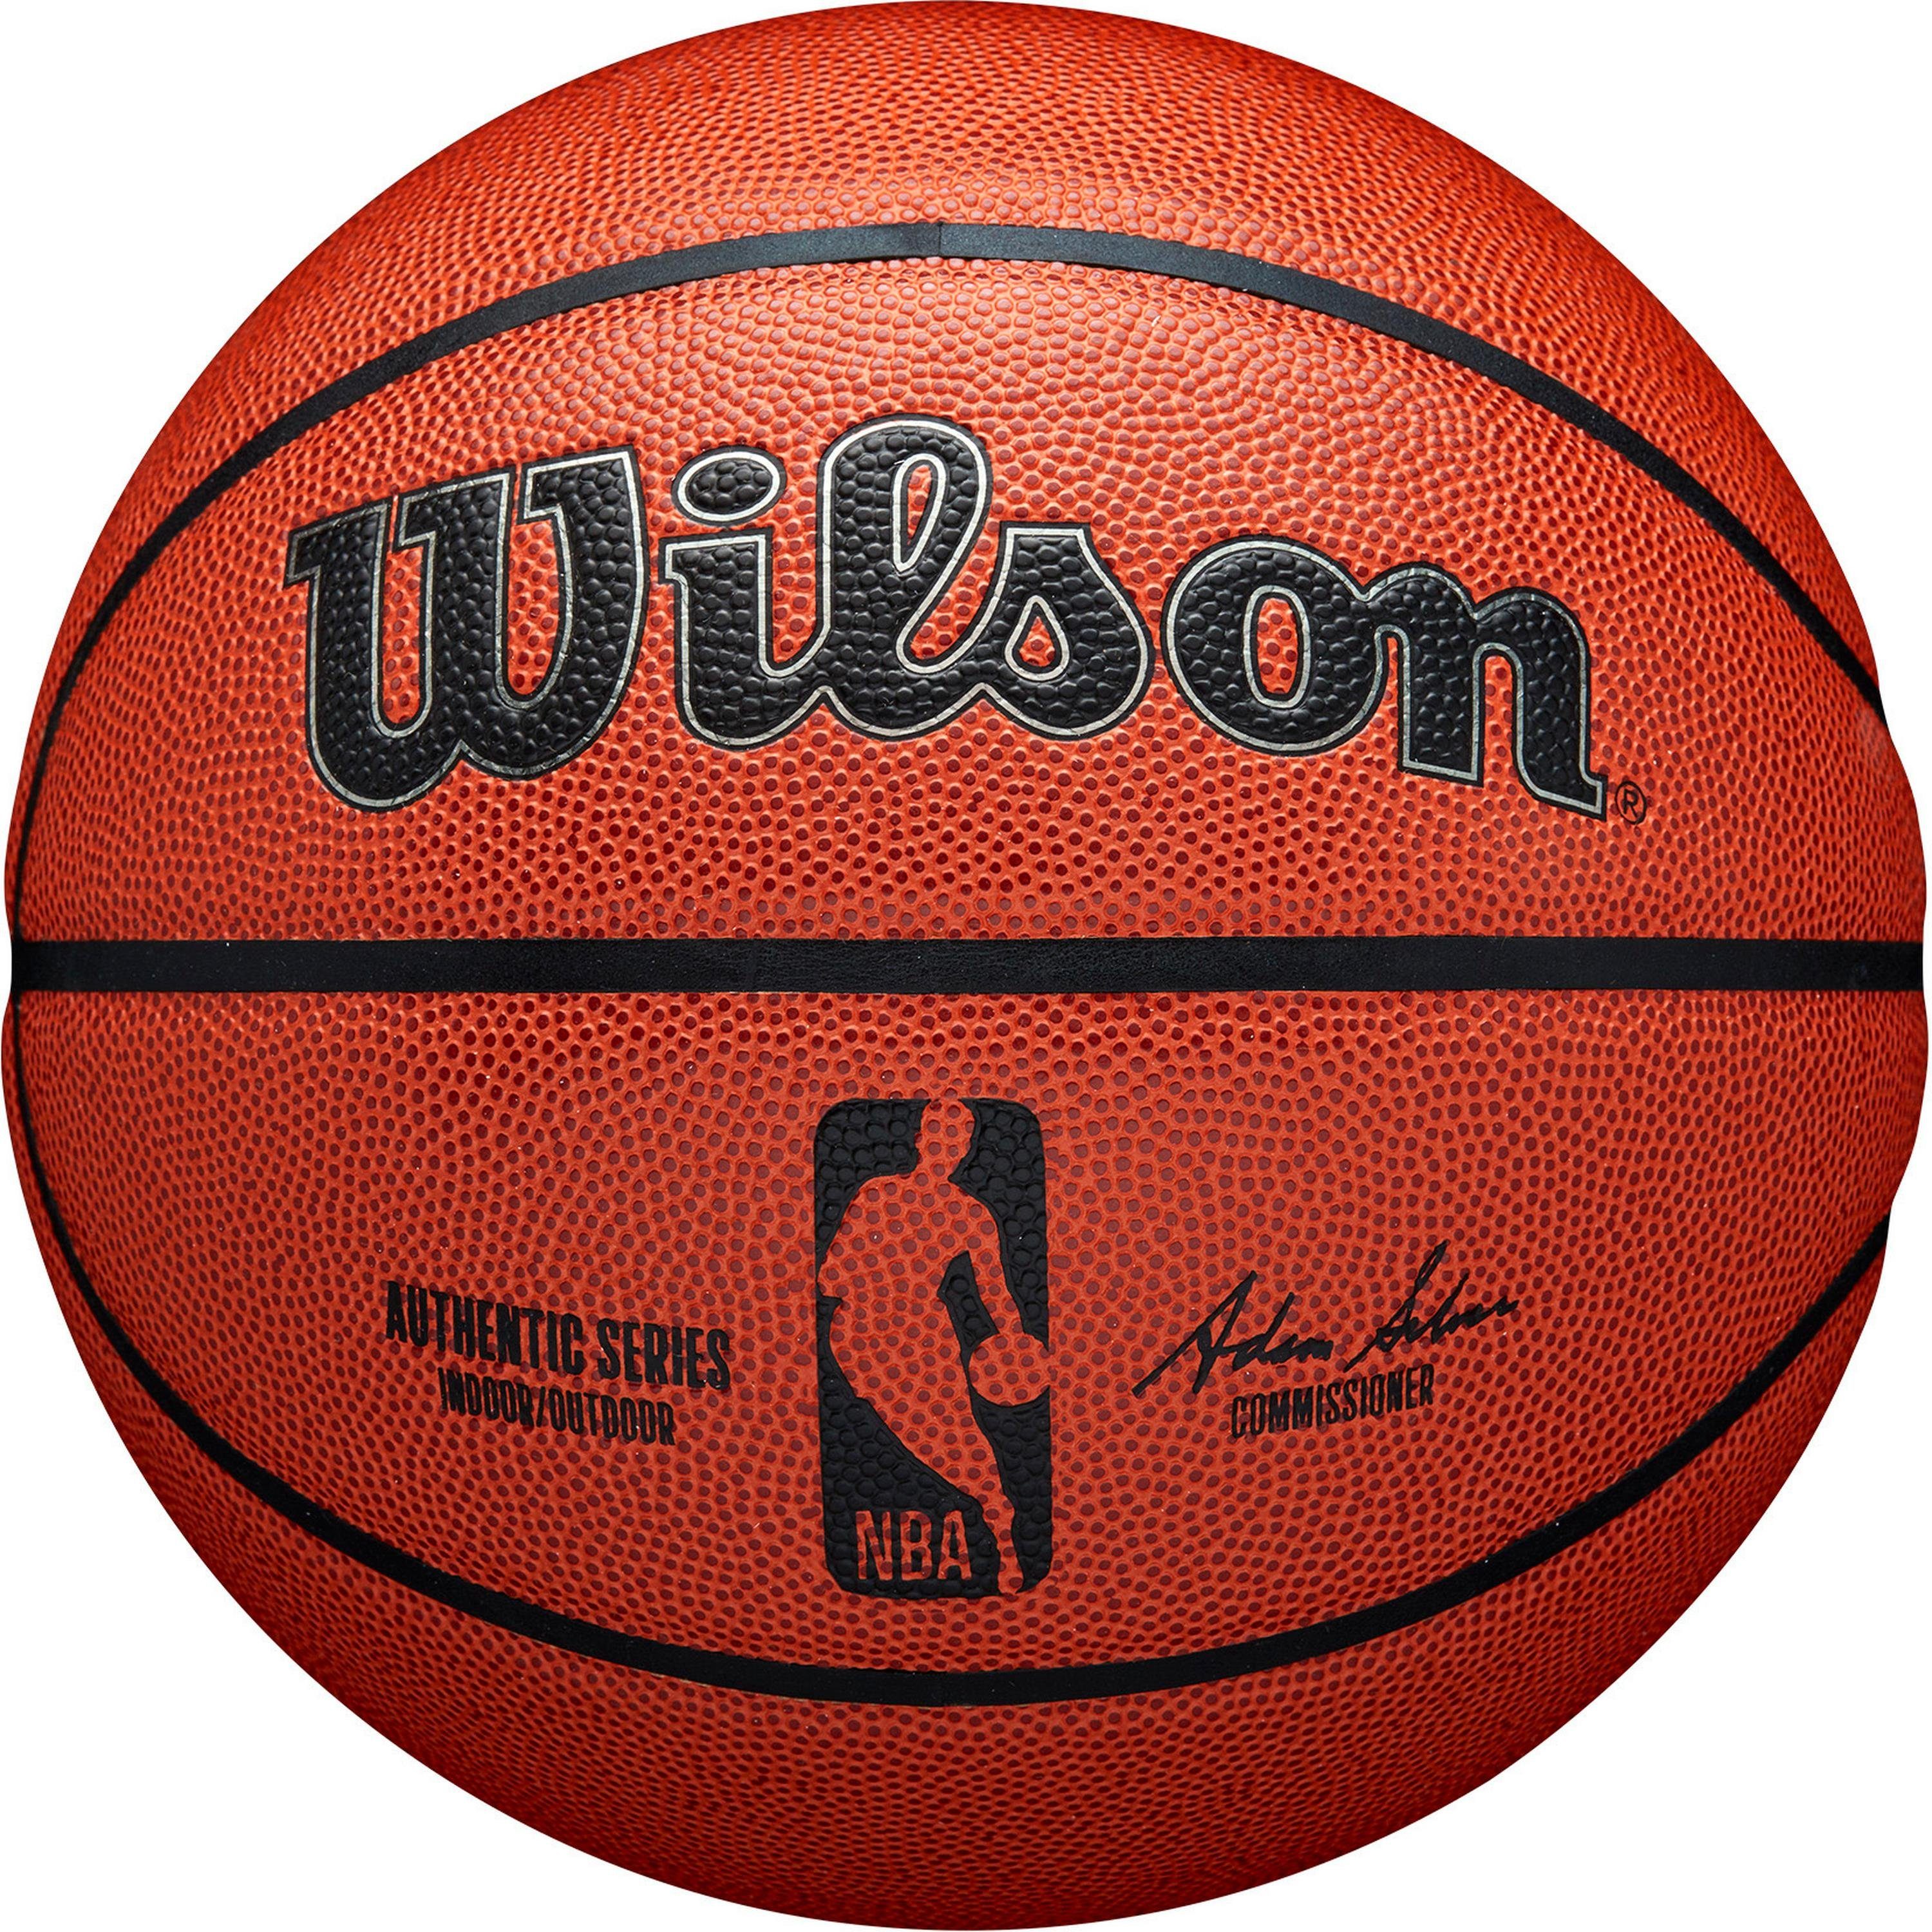 Basketball INDOOR OUTDOOR AUTHENTIC Wilson NBA